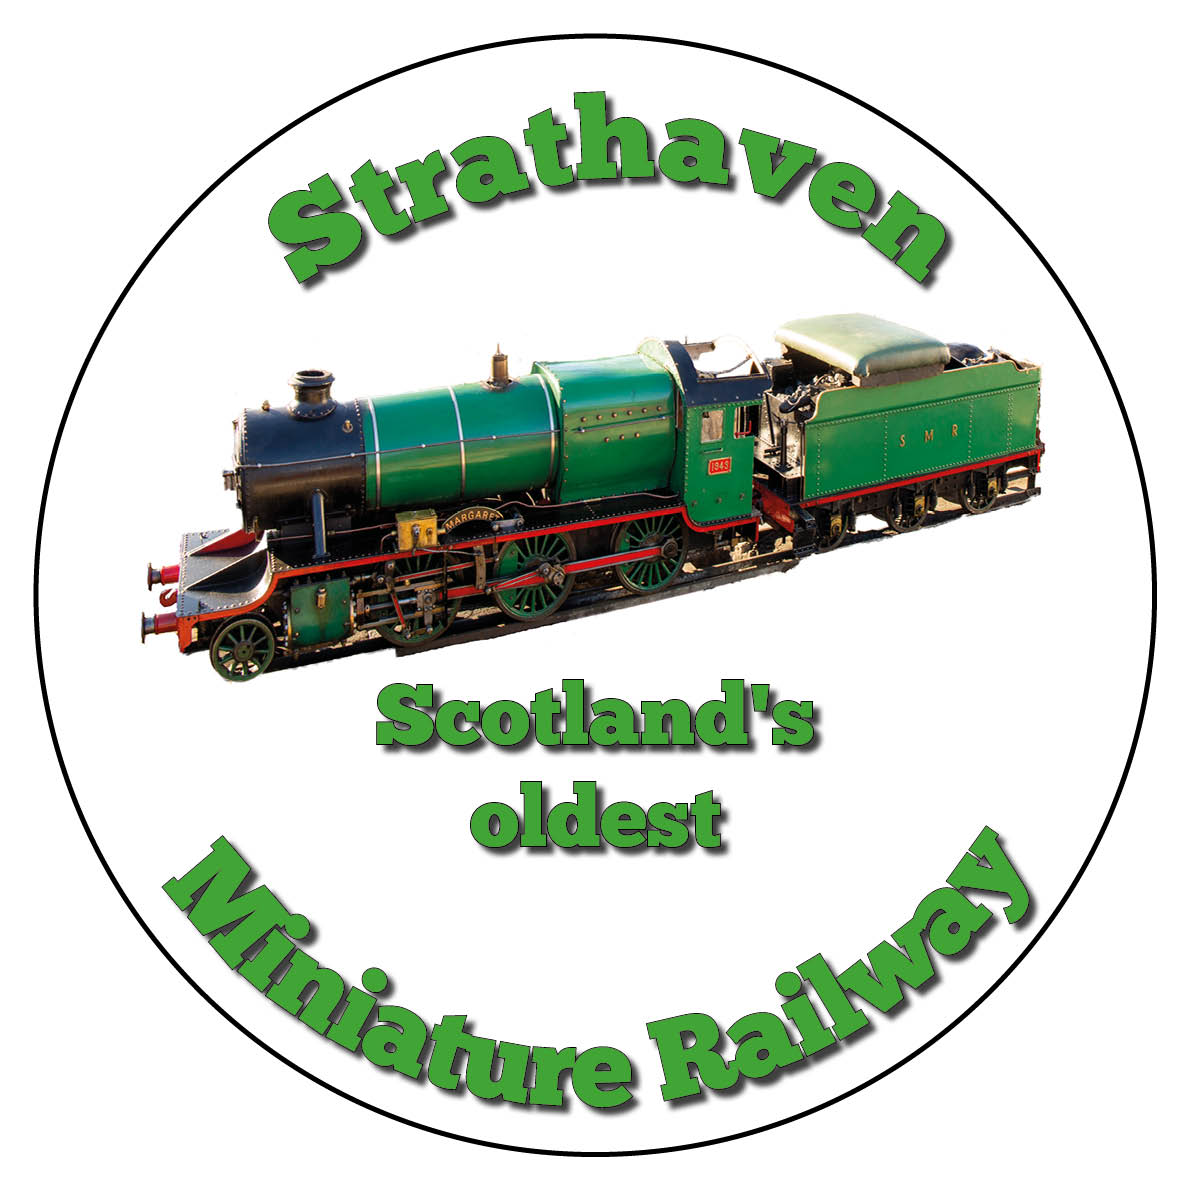 Strathaven Scotland's oldest miniature railway badge